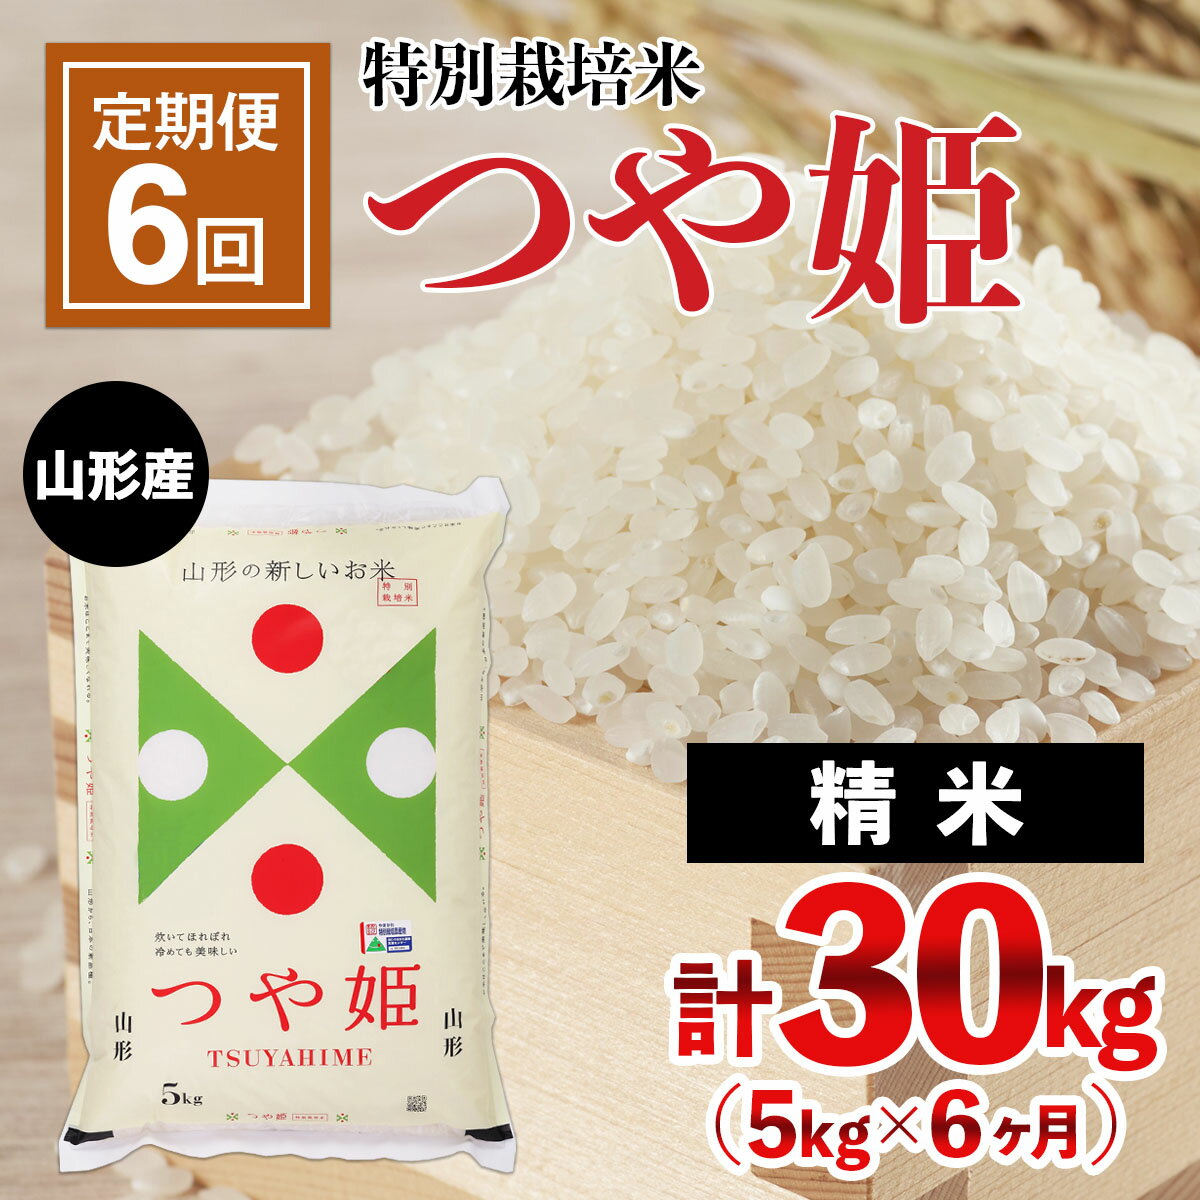 【ふるさと納税】FY21-332 【定期便6回】山形産 特別栽培米 つや姫 5kg×6ヶ月(計30kg)